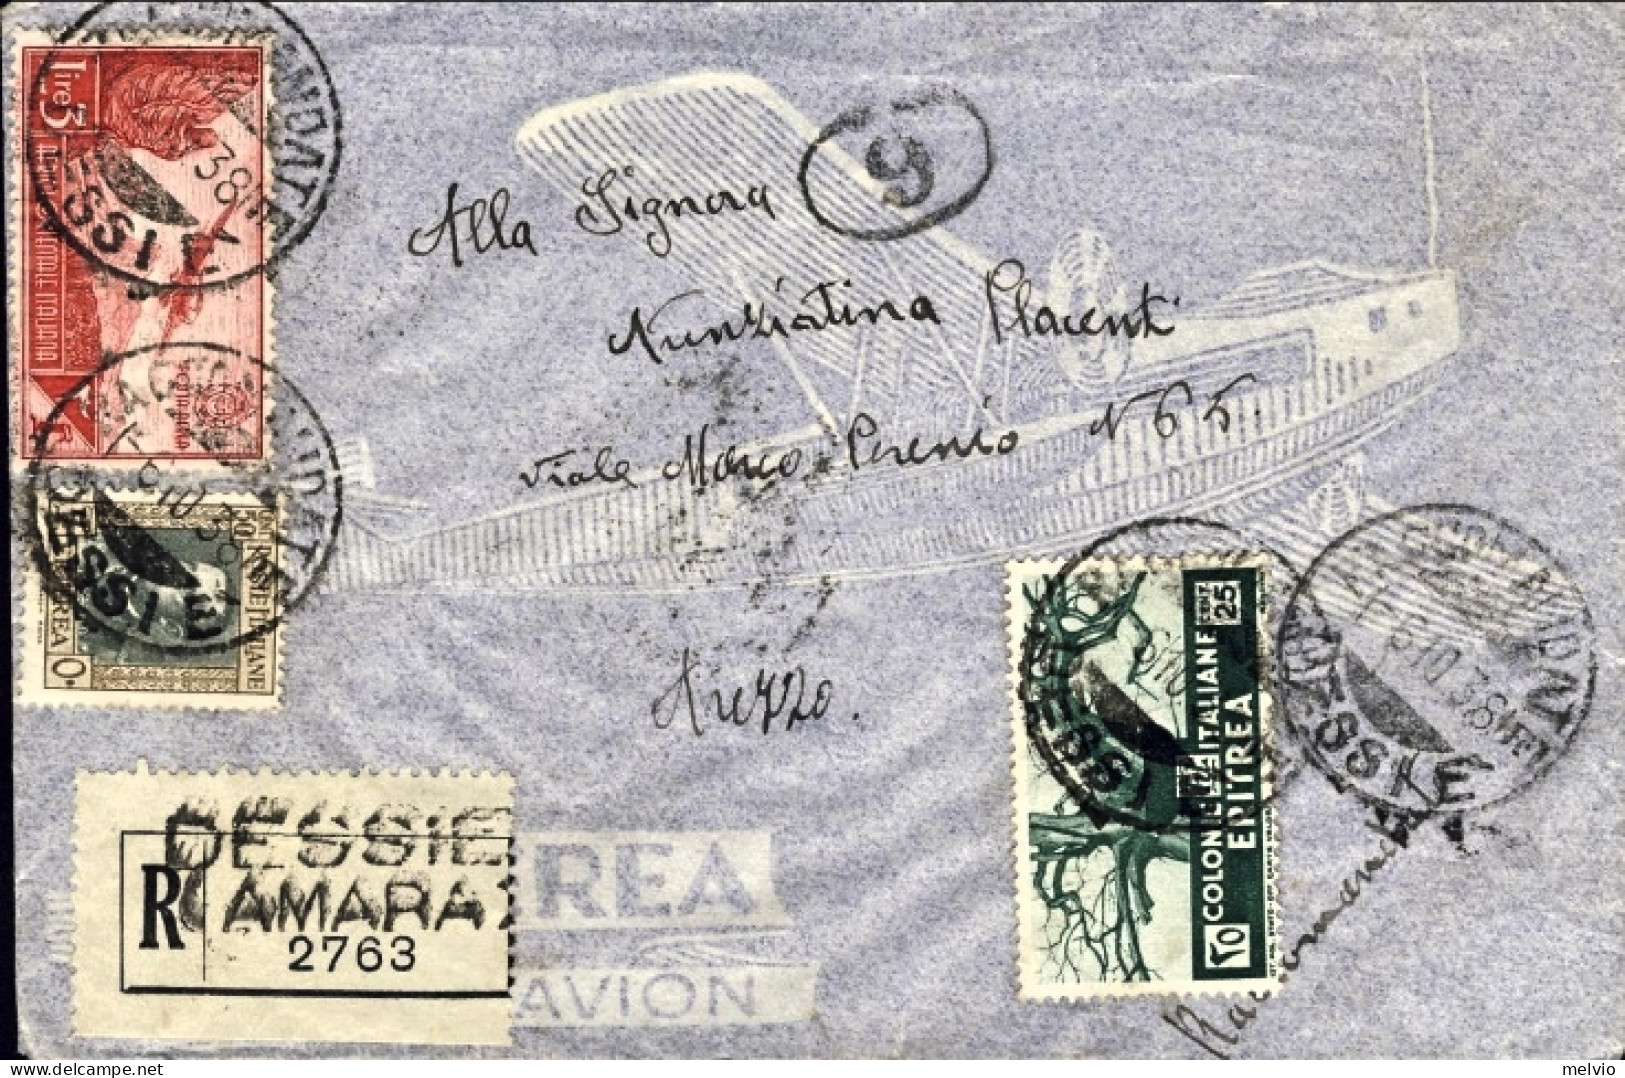 1938-Eritrea 25c. Soggetti Africani+50c. Vittorio Emanuele III+A.O.I.posta Aerea - Eritrea